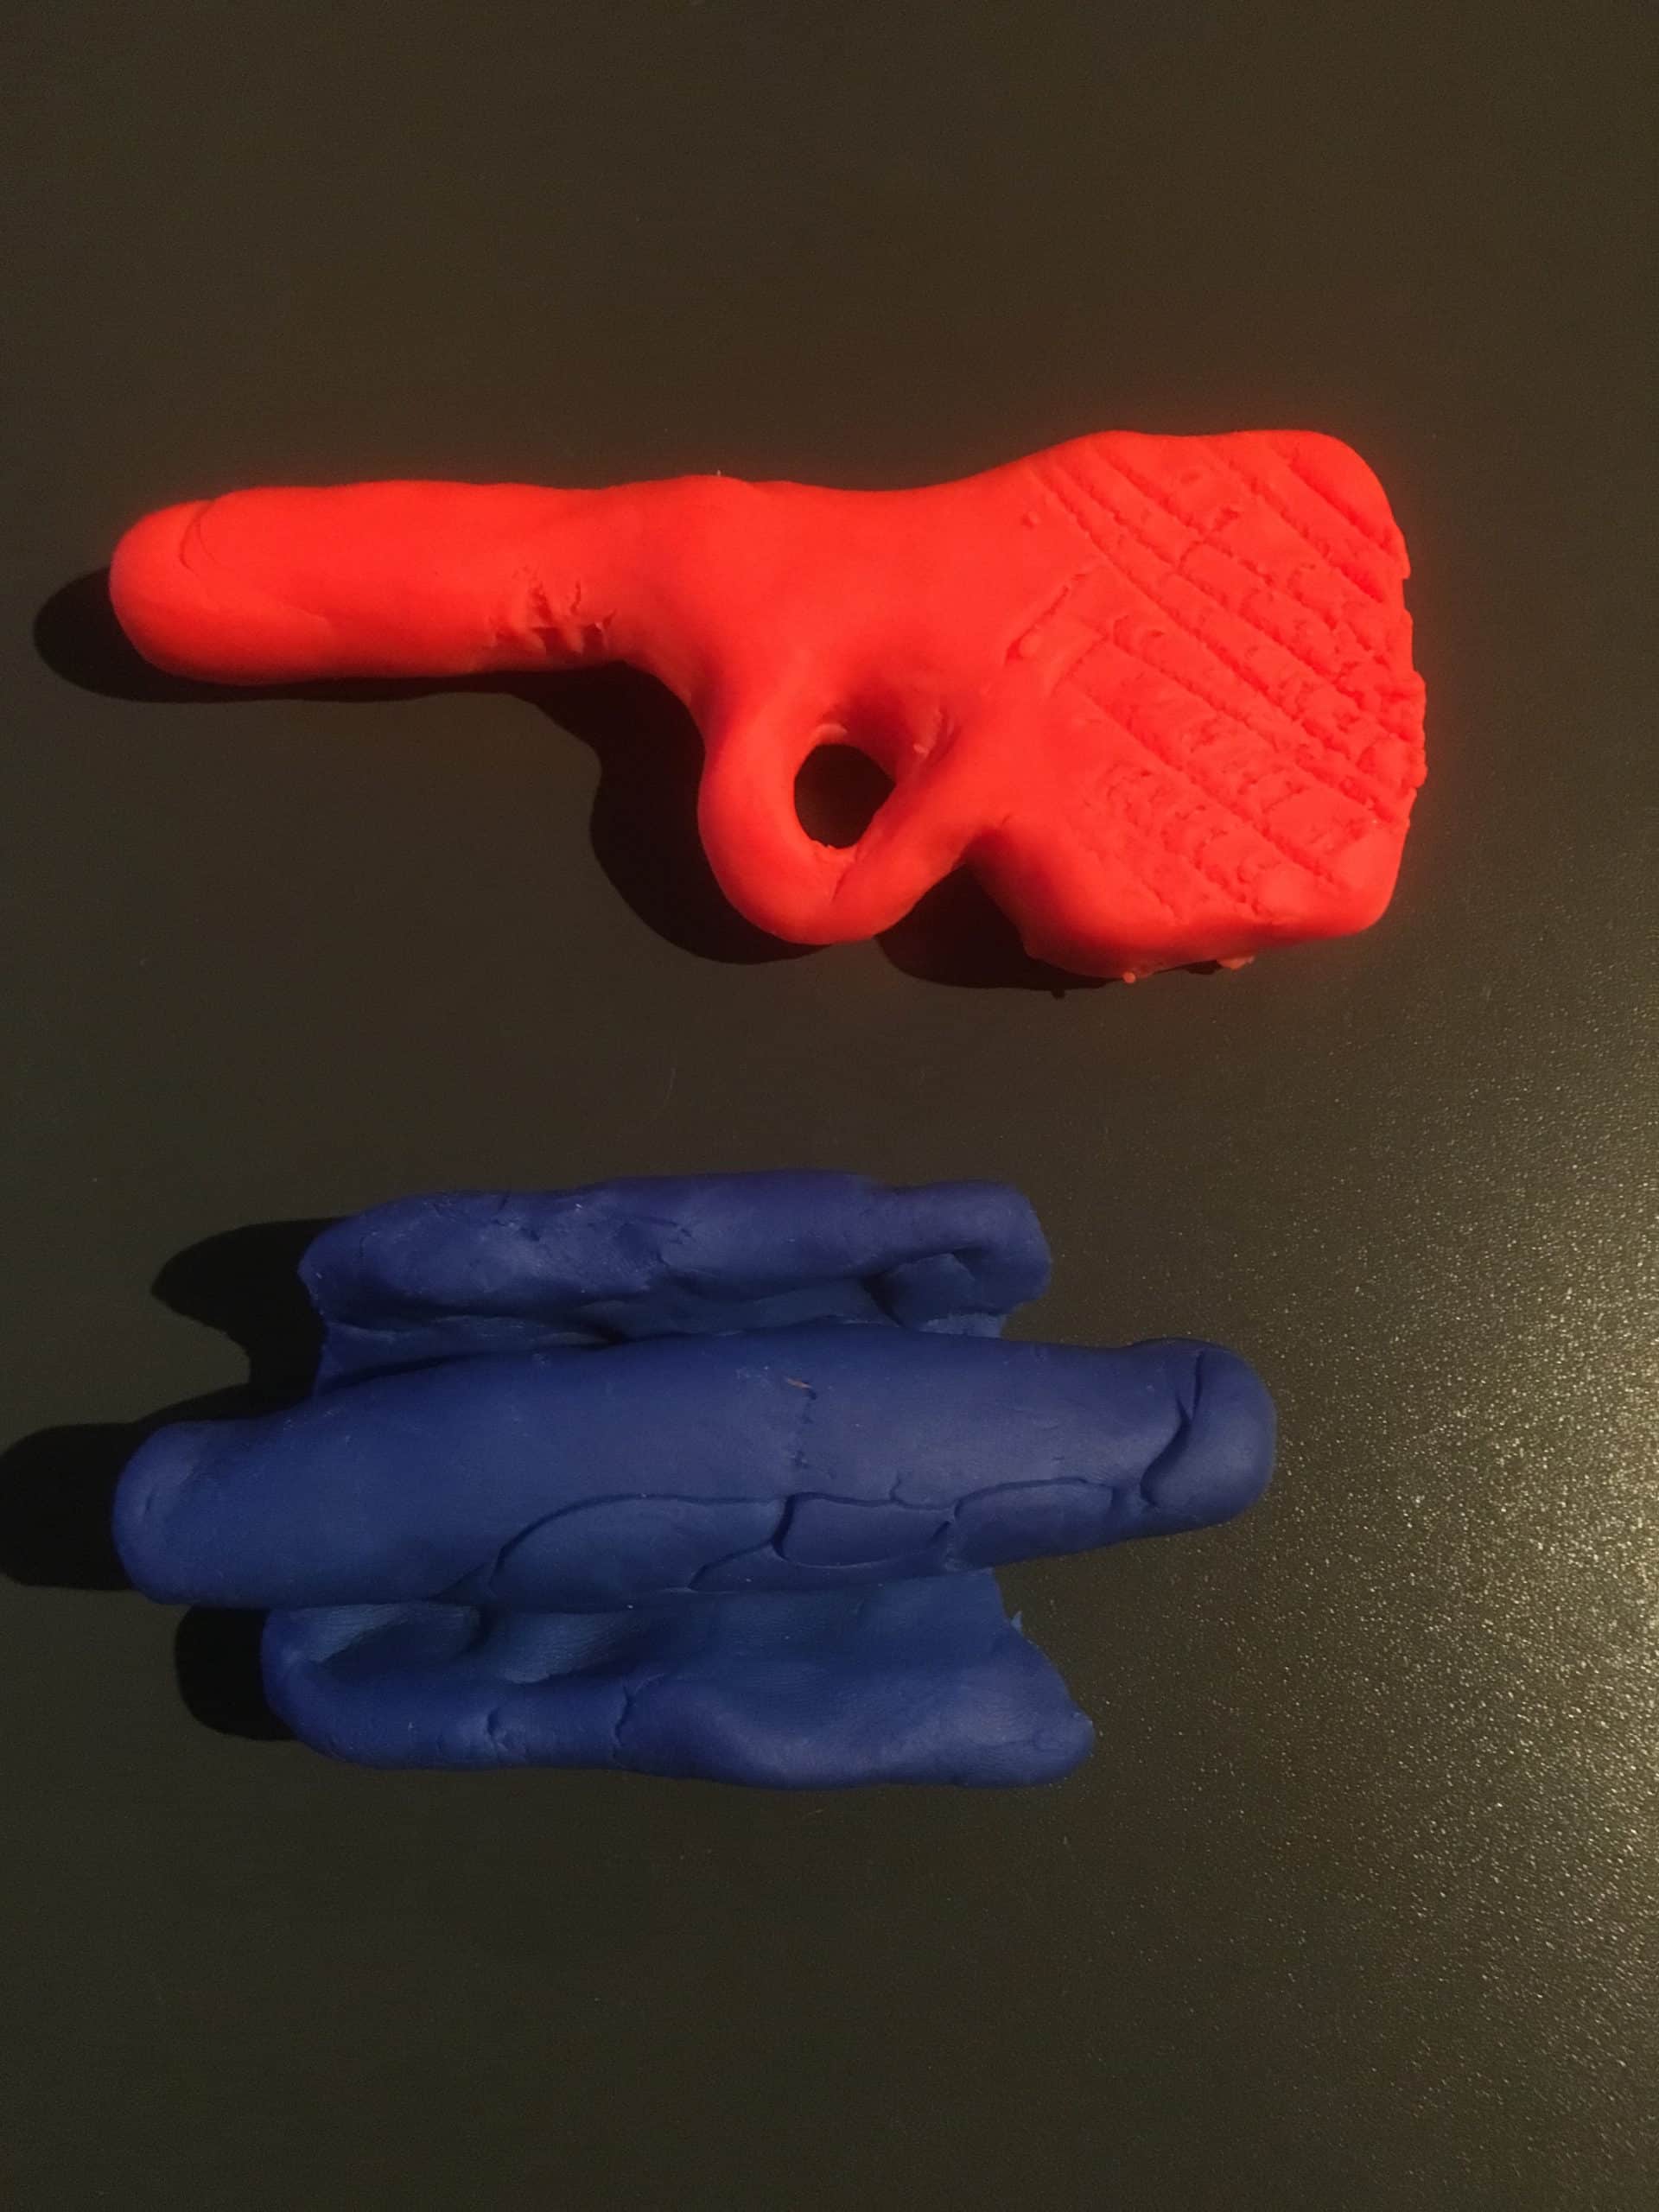 Två figurer i färgad lera ligger på en mörk yta. En röd figur som kan tolkas som en pinne med en ögla på samt en blå figur i form av ett rör med flikar uppe och nere.